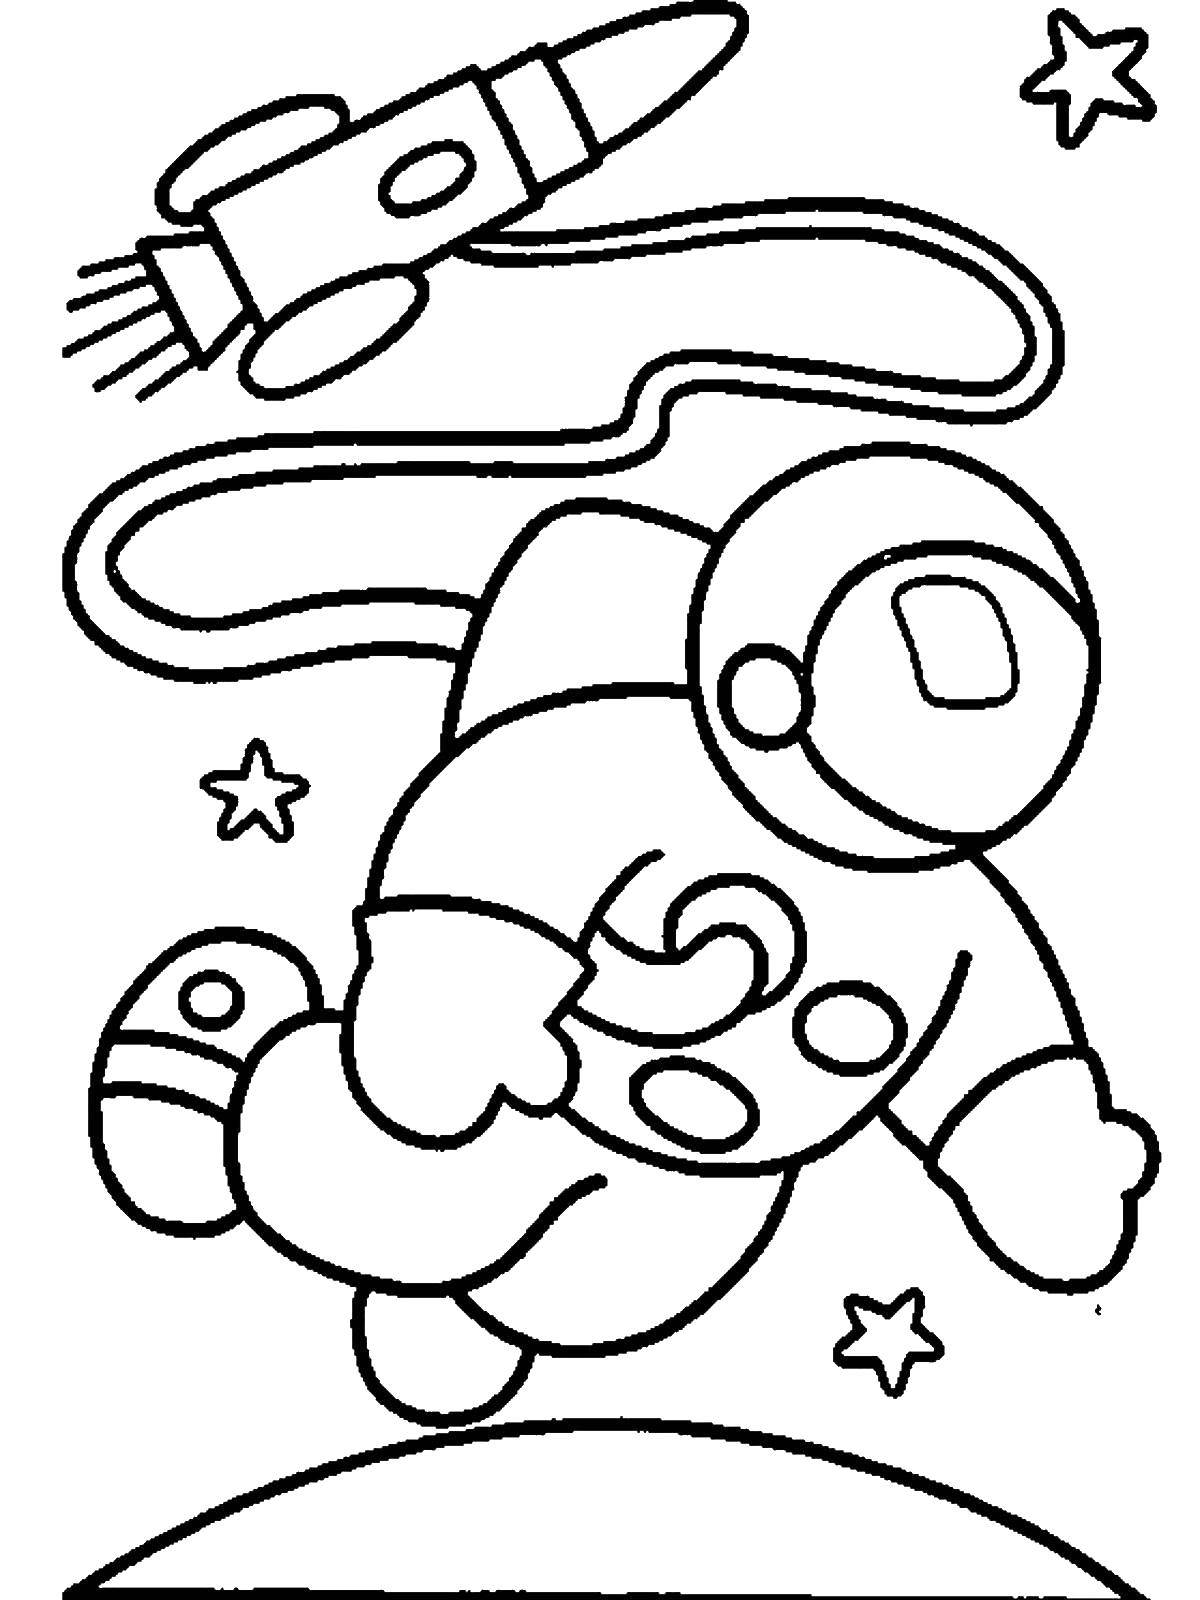 Раскраски к дню космонавтики для детей распечатать. Космос раскраска для детей. Раскраска. В космосе. Космонавт раскраска для детей. Раскраска на тему космос для детей.